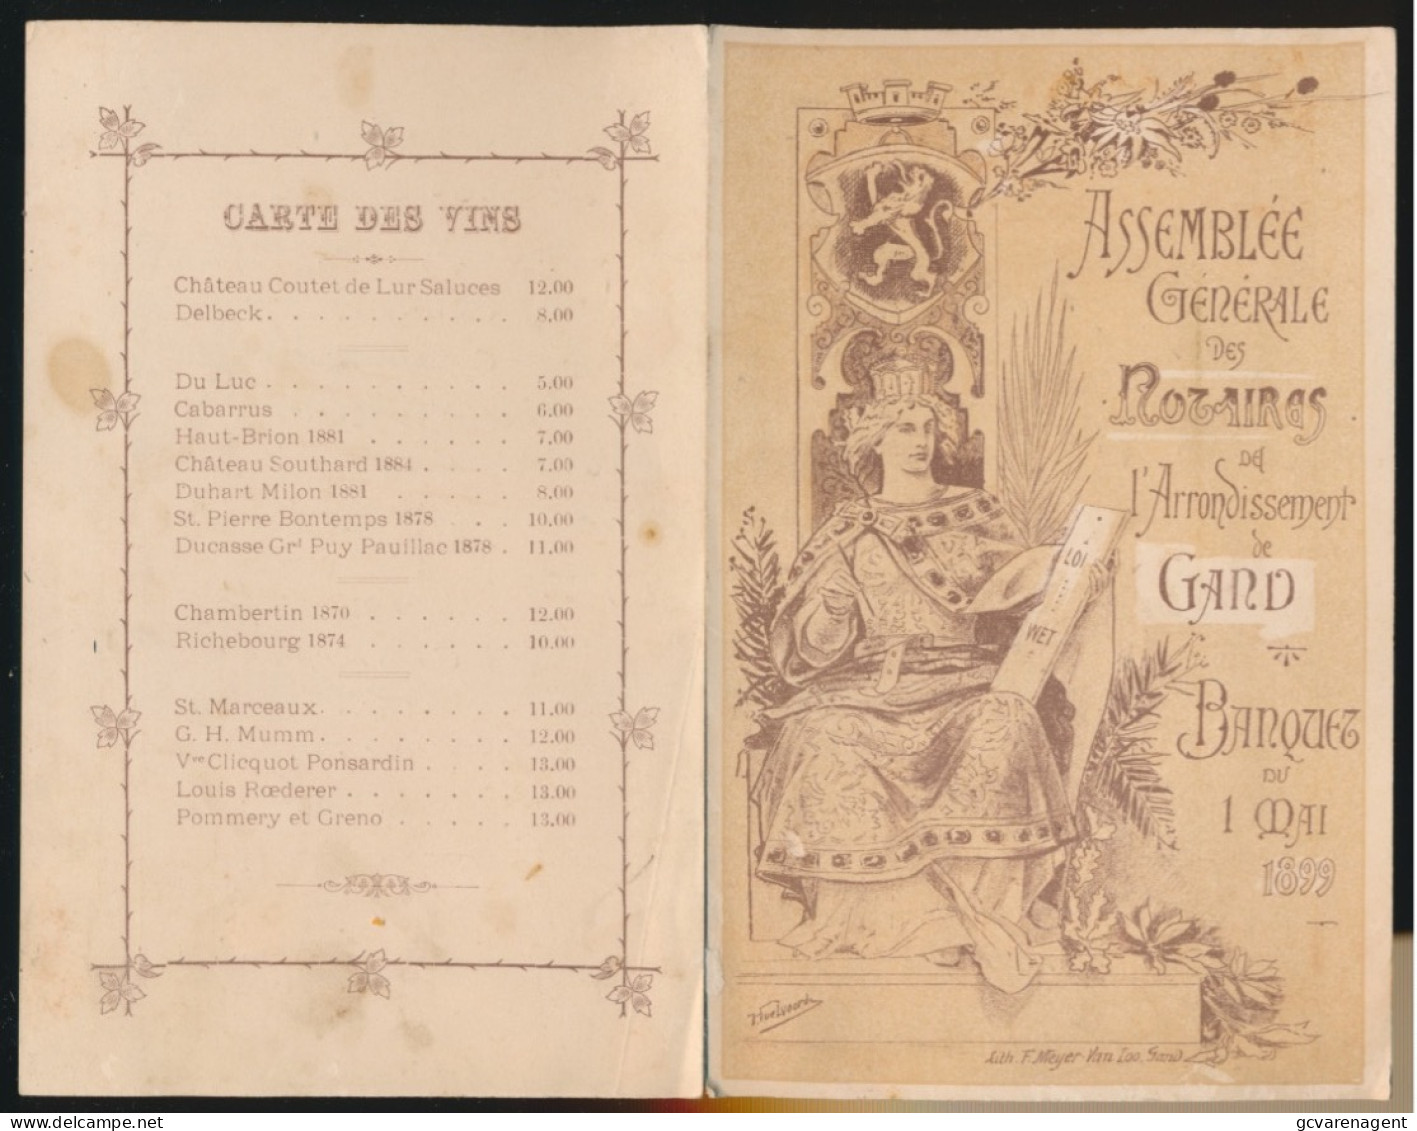 GAND BANQUET DU 1 MAI 1899 - ASSEMBLEE GENERALE DES ROSAIRES DE L'ARRONDISSEMENT DE GAND    195 X 120 MM - Menus